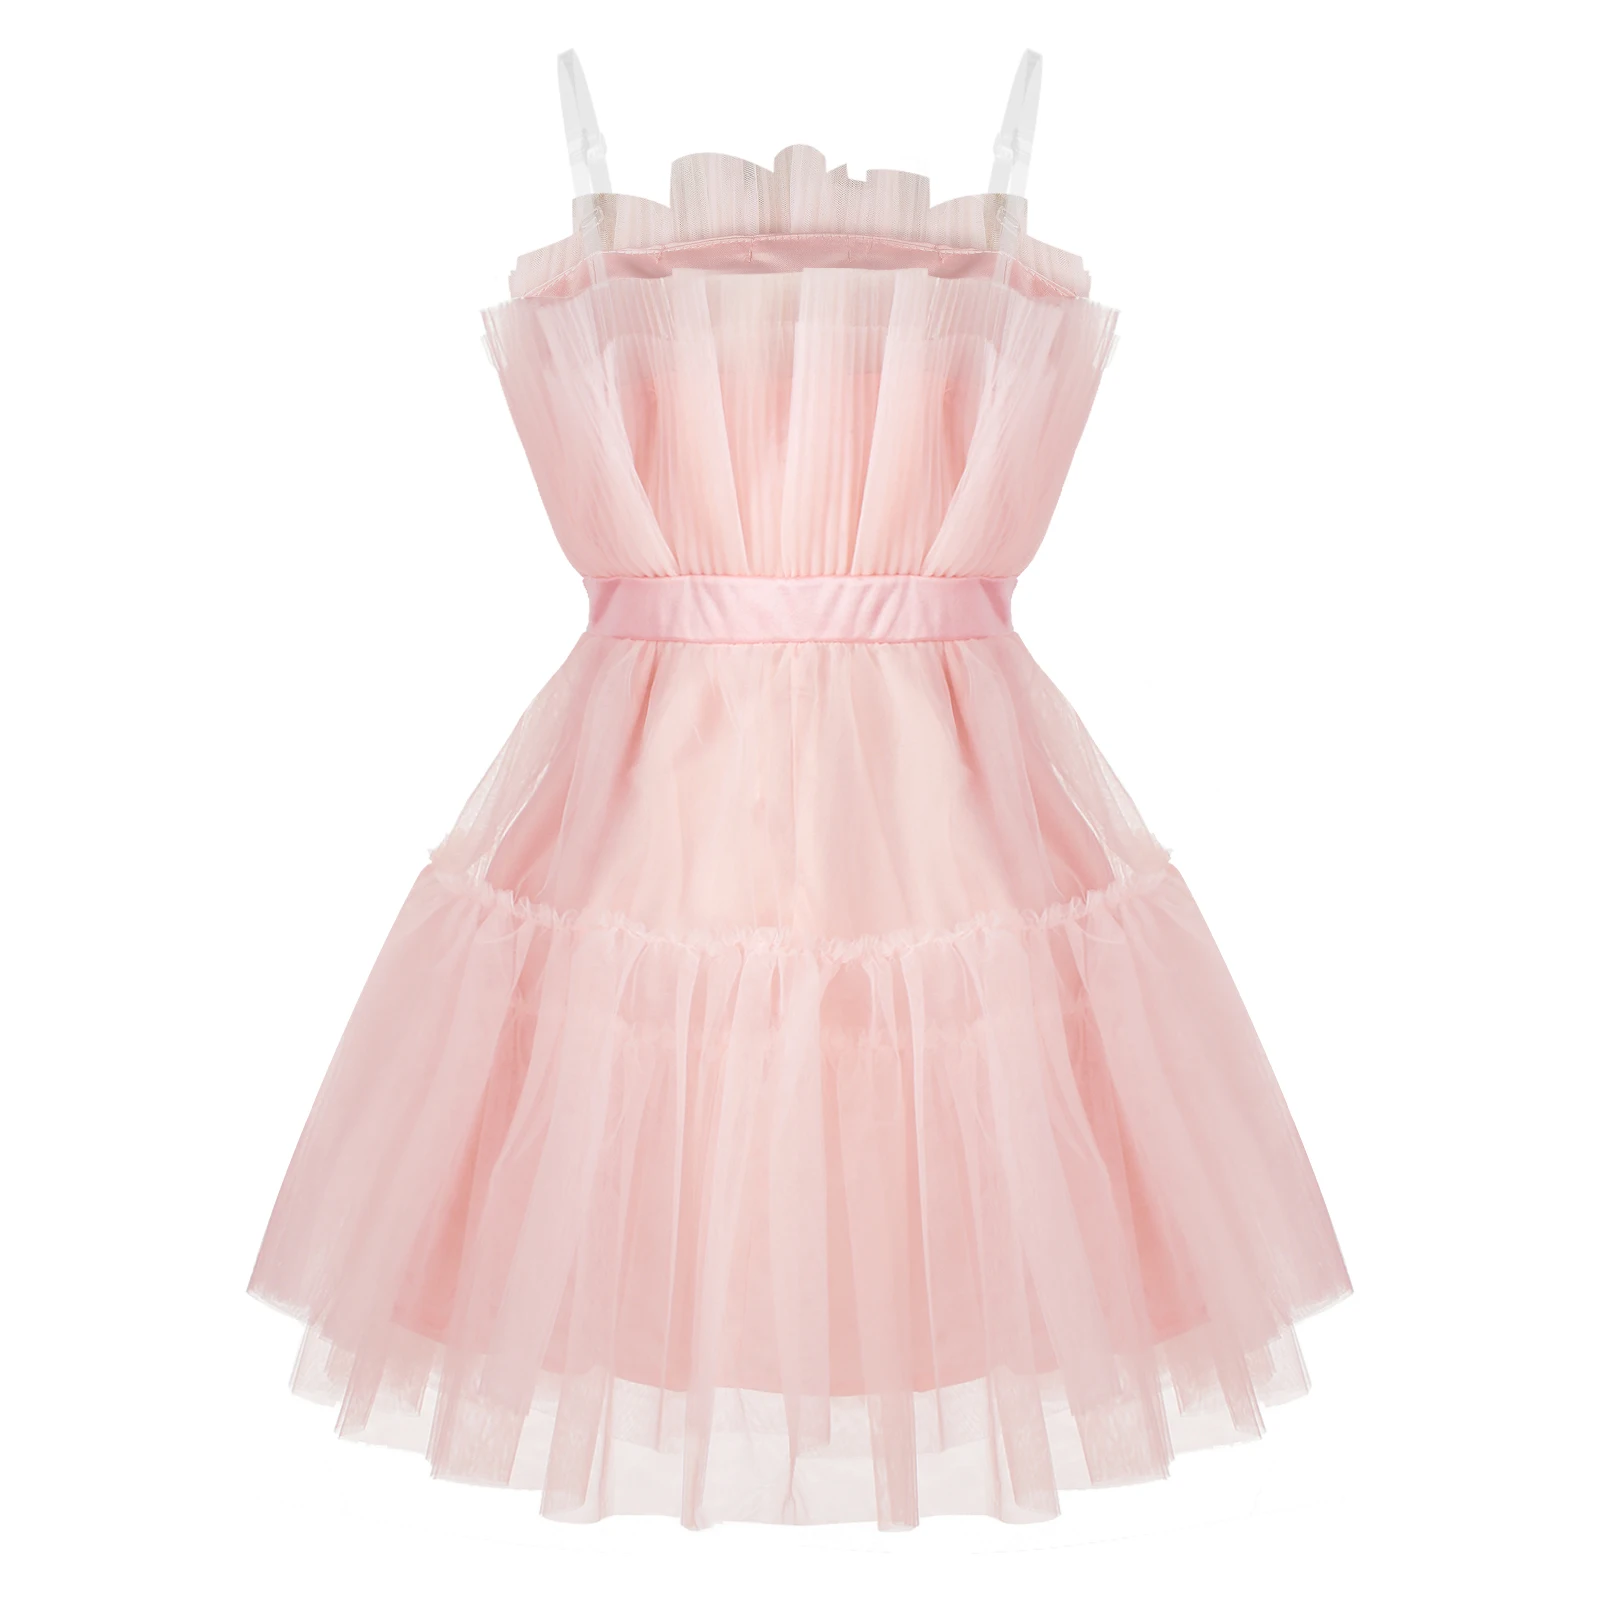 Choomomo Bayan Saf Straplez Prenses Kısa Elbiseler Çok Katmanlı Örgü Yüksek Bel Hattı Parti Elbise İlmek ile Doğum Günü için . ' - ' . 4